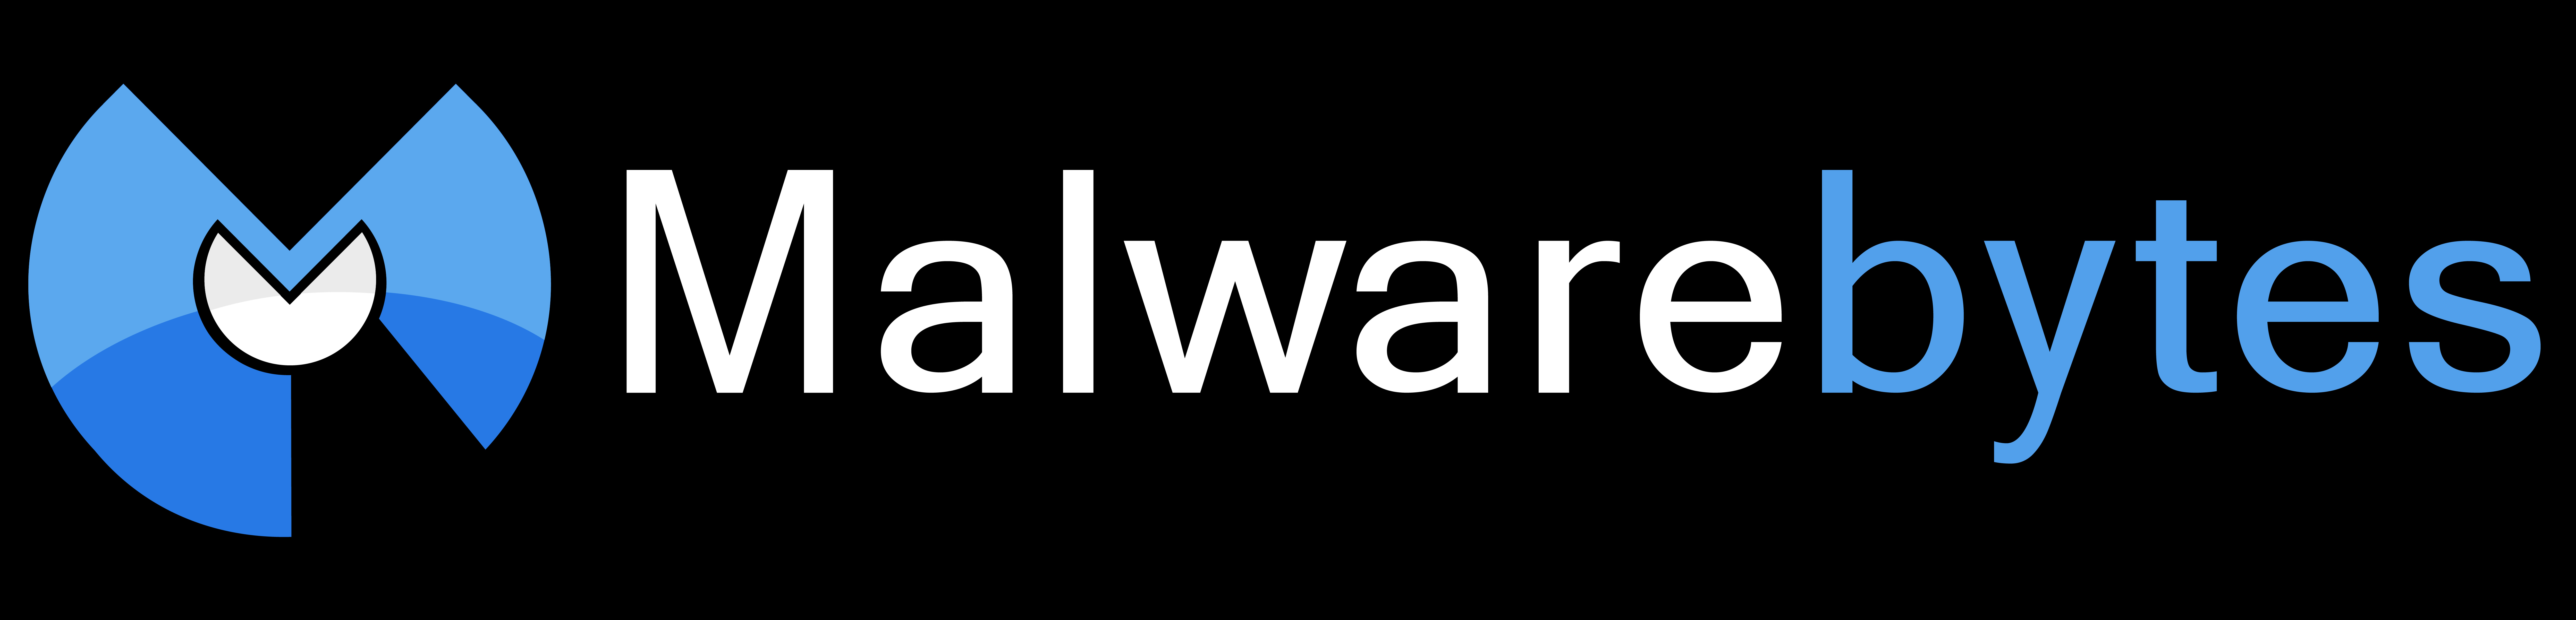 malwarebytes anti malware download link free